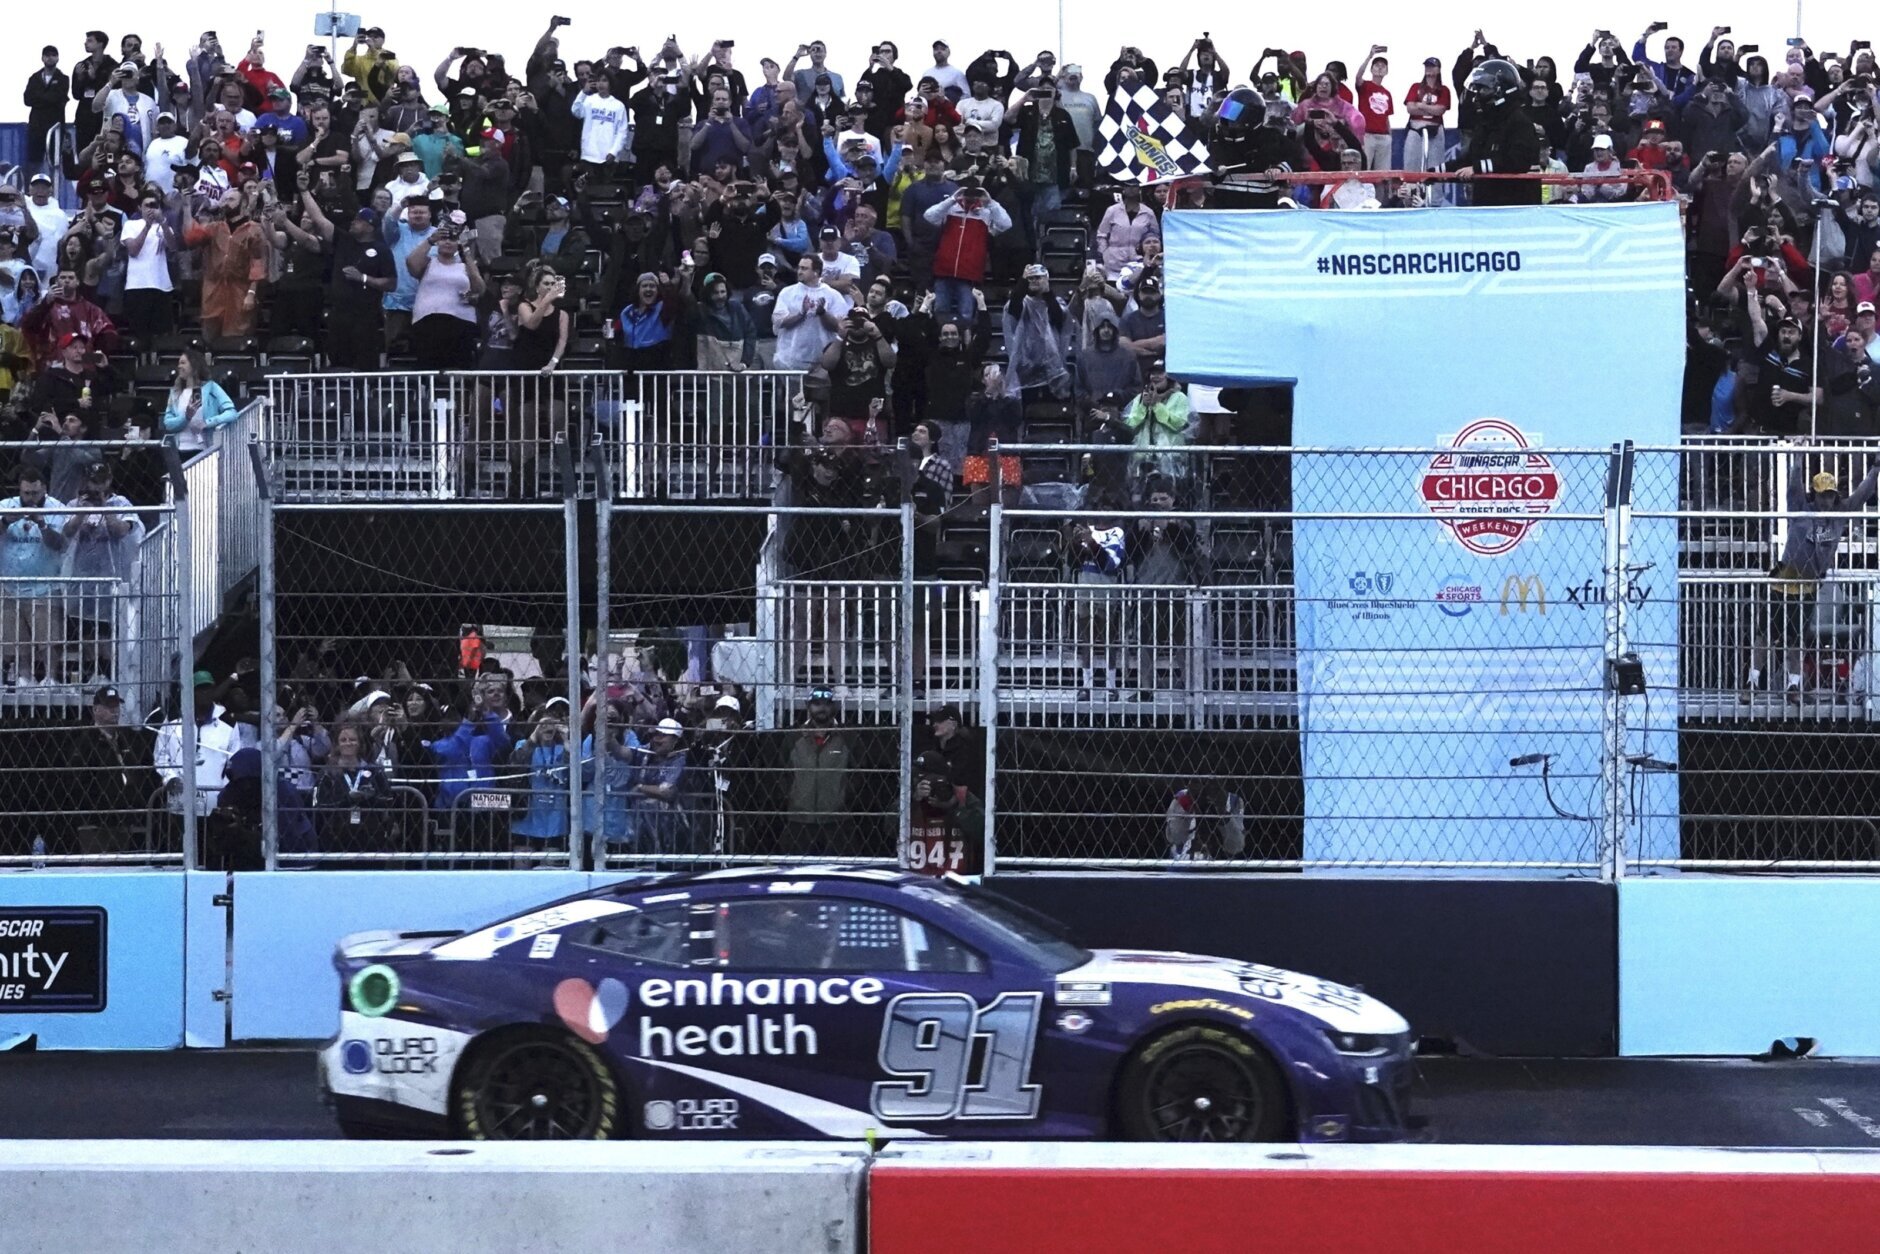 Shane van Gisbergen wins his NASCAR Cup Series debut in memorable